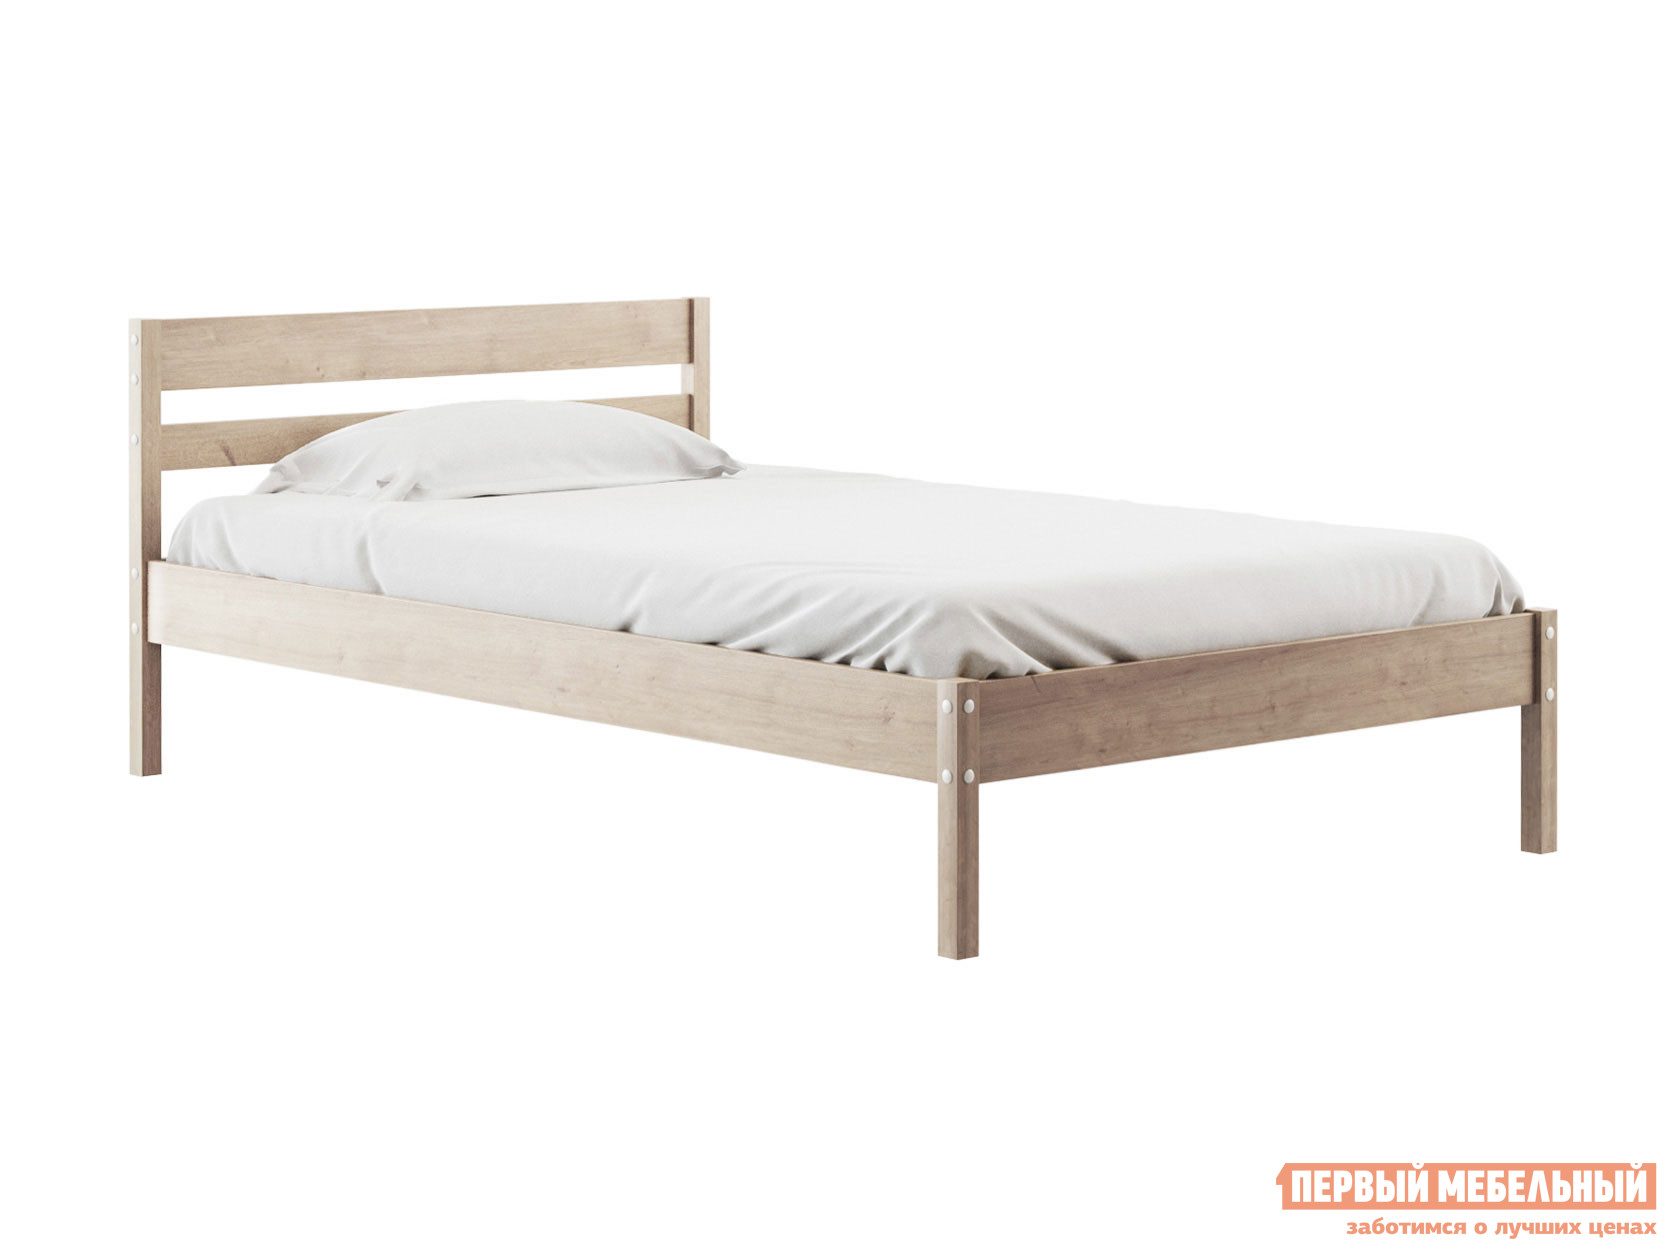 Двуспальная кровать  Эко массив березы Натуральный, 120х200 см, 24 см